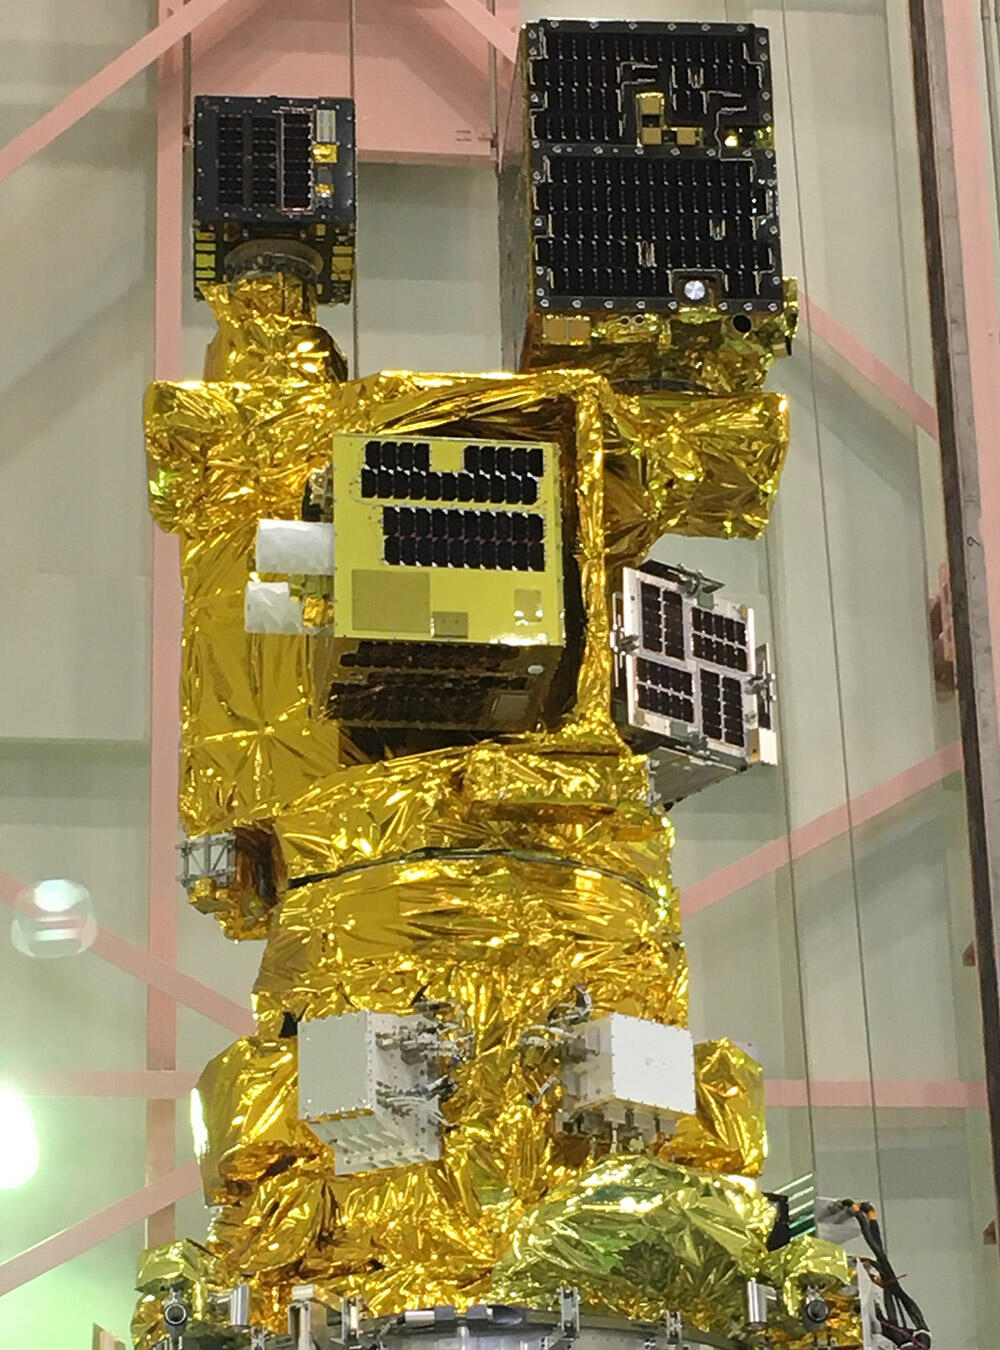 革新的衛星技術実証2号機は、「小型実証衛星2号機（RAISE-2）」（6つの実証テーマを搭載）と、8機の超小型衛星・キューブサットで構成されている。